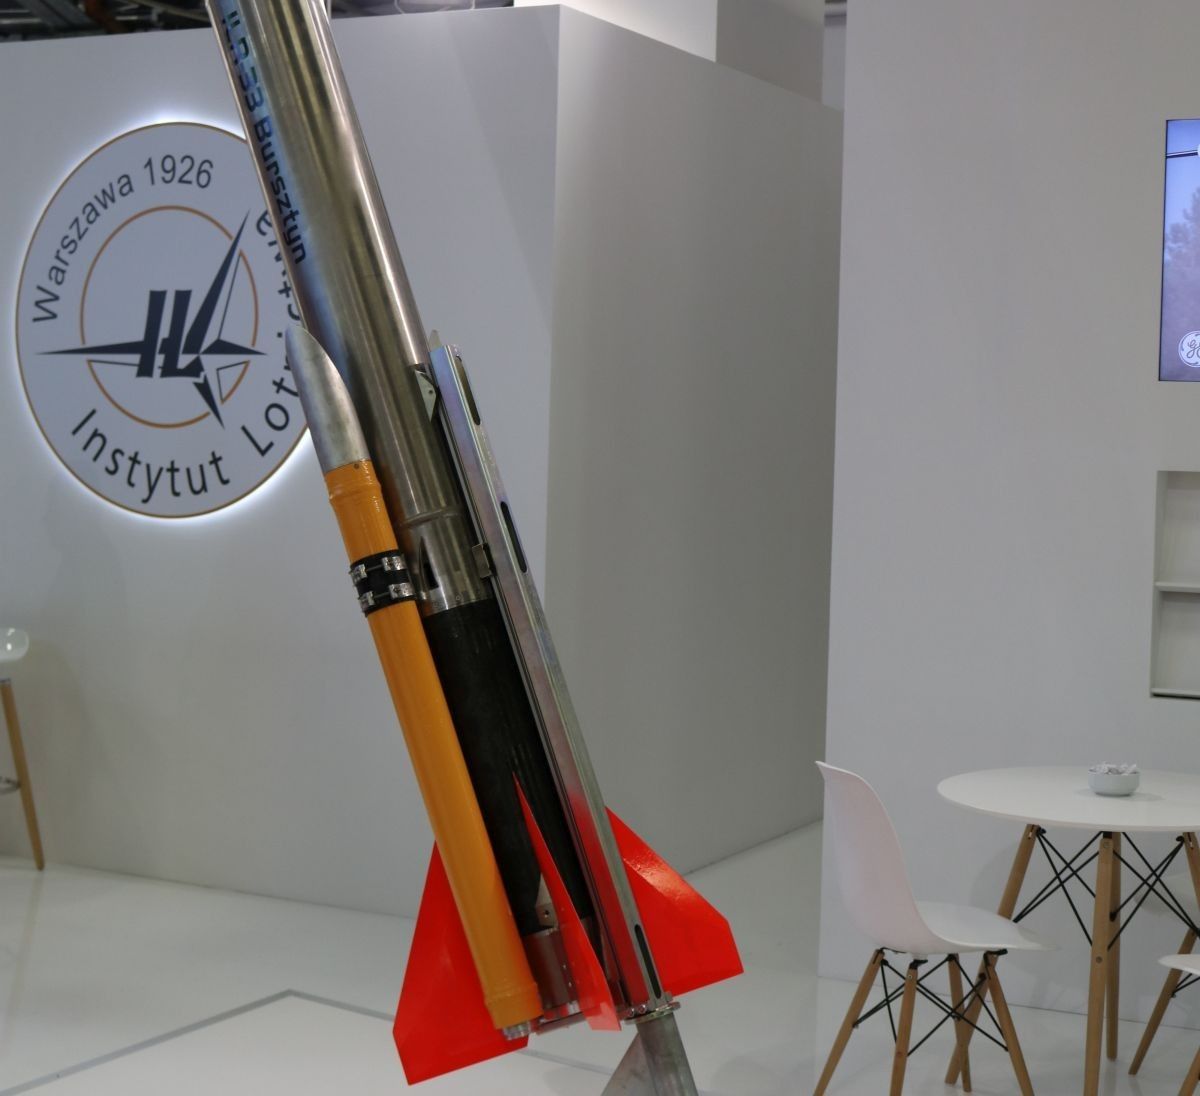 Model rakiety ILR-33 „Bursztyn” prezentowany podczas MSPO 2018 w Kielcach. Fot. Paweł Ziemnicki/Space24.pl